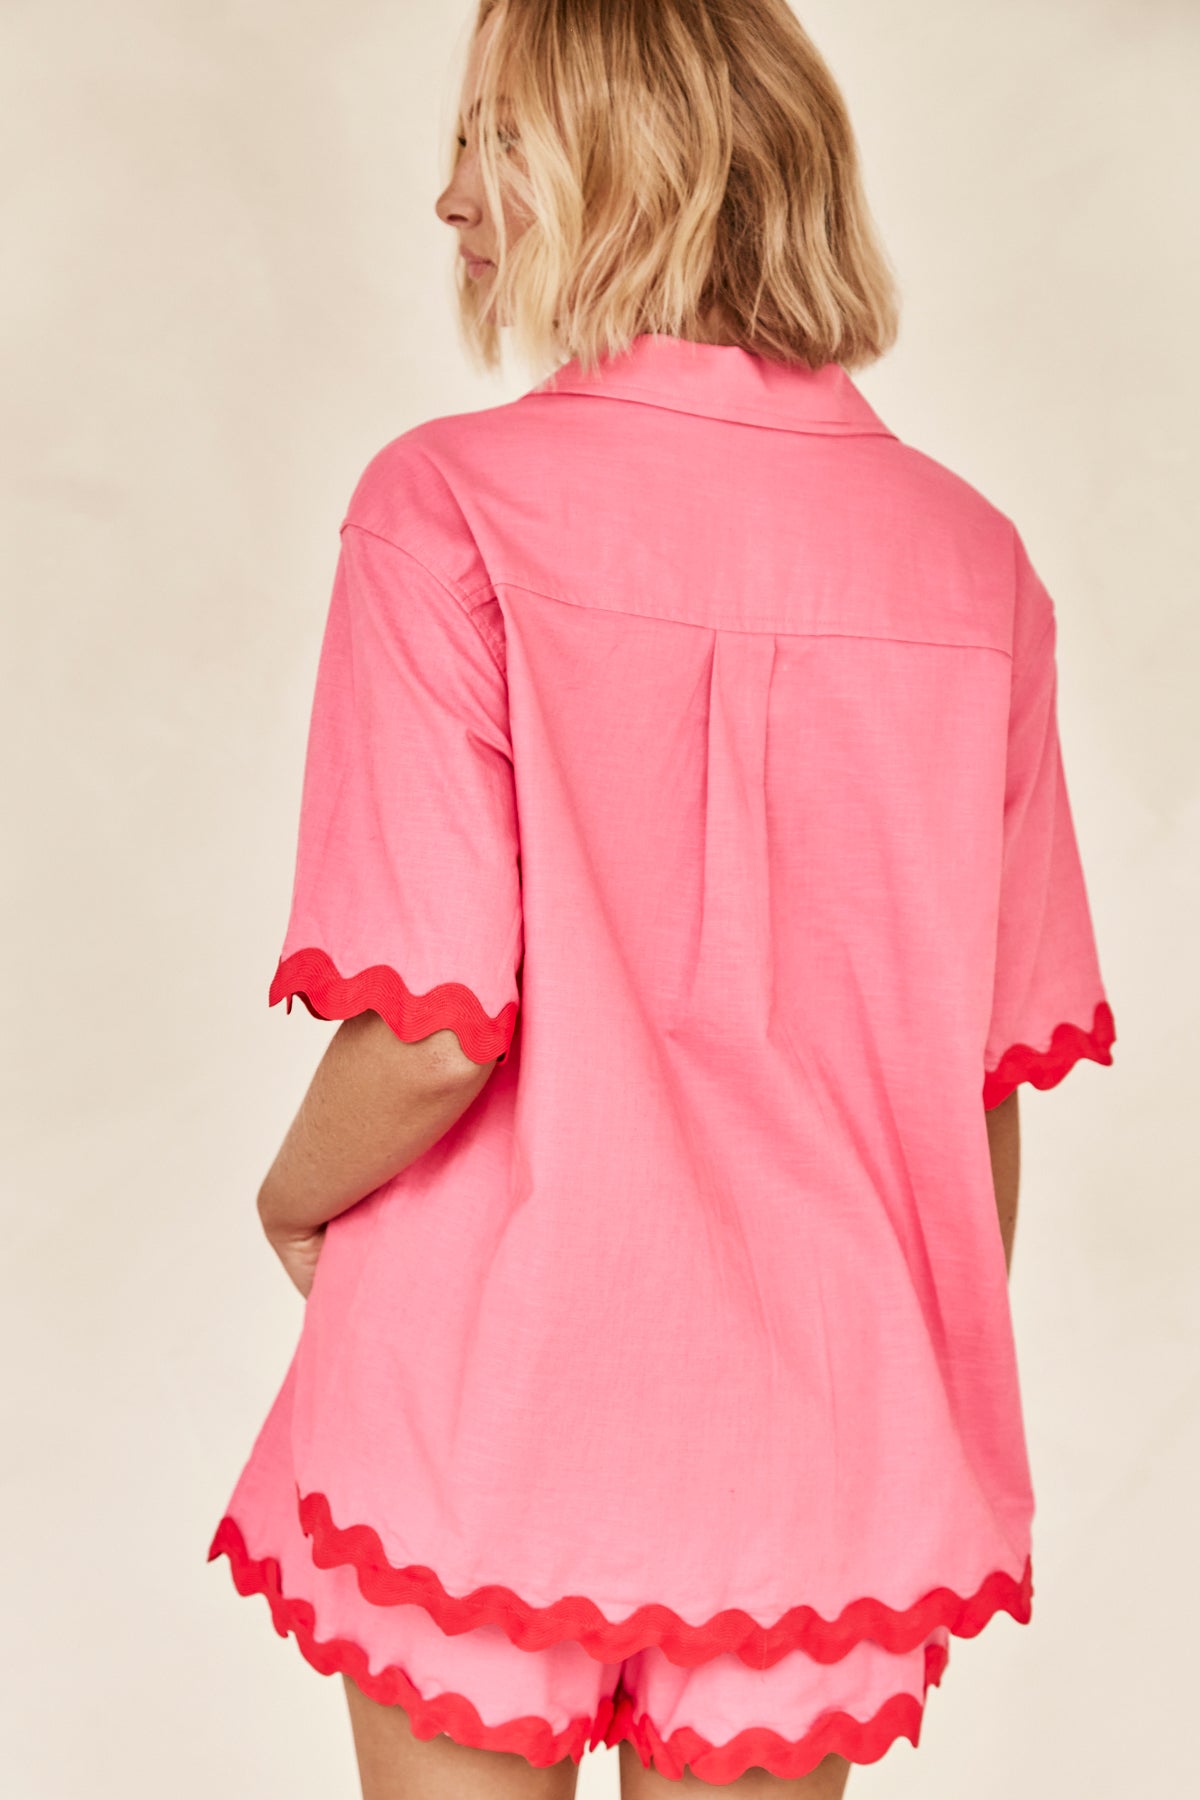 Cedar Shirt (Pink)